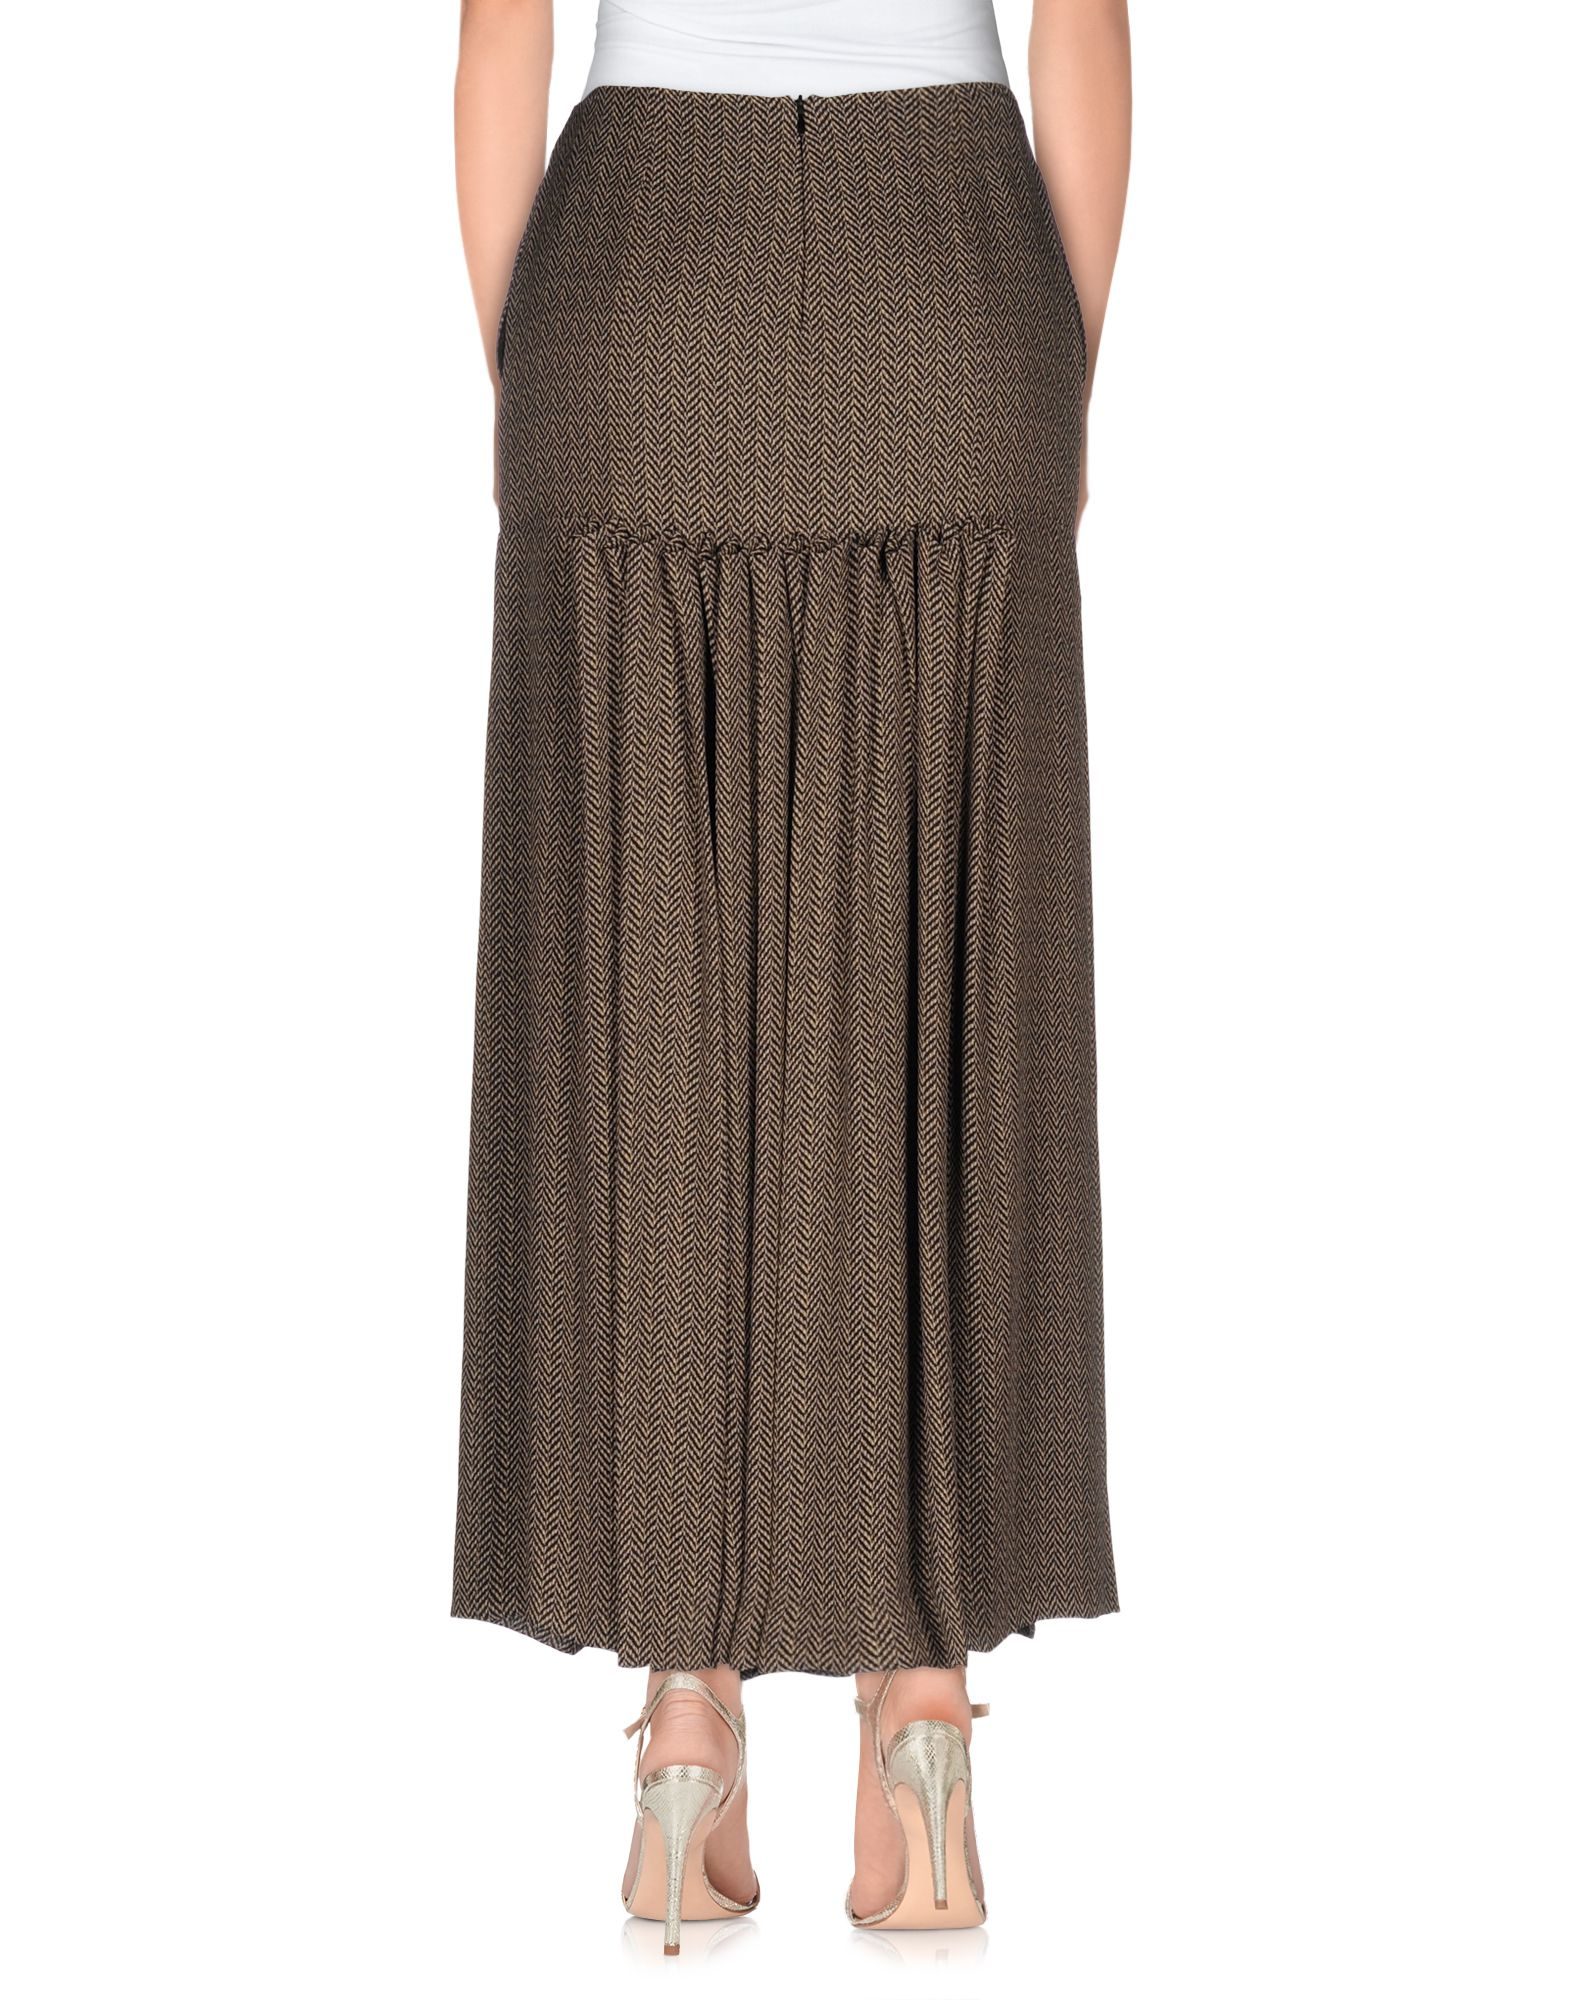 Maison margiela Long Skirt in Khaki | Lyst